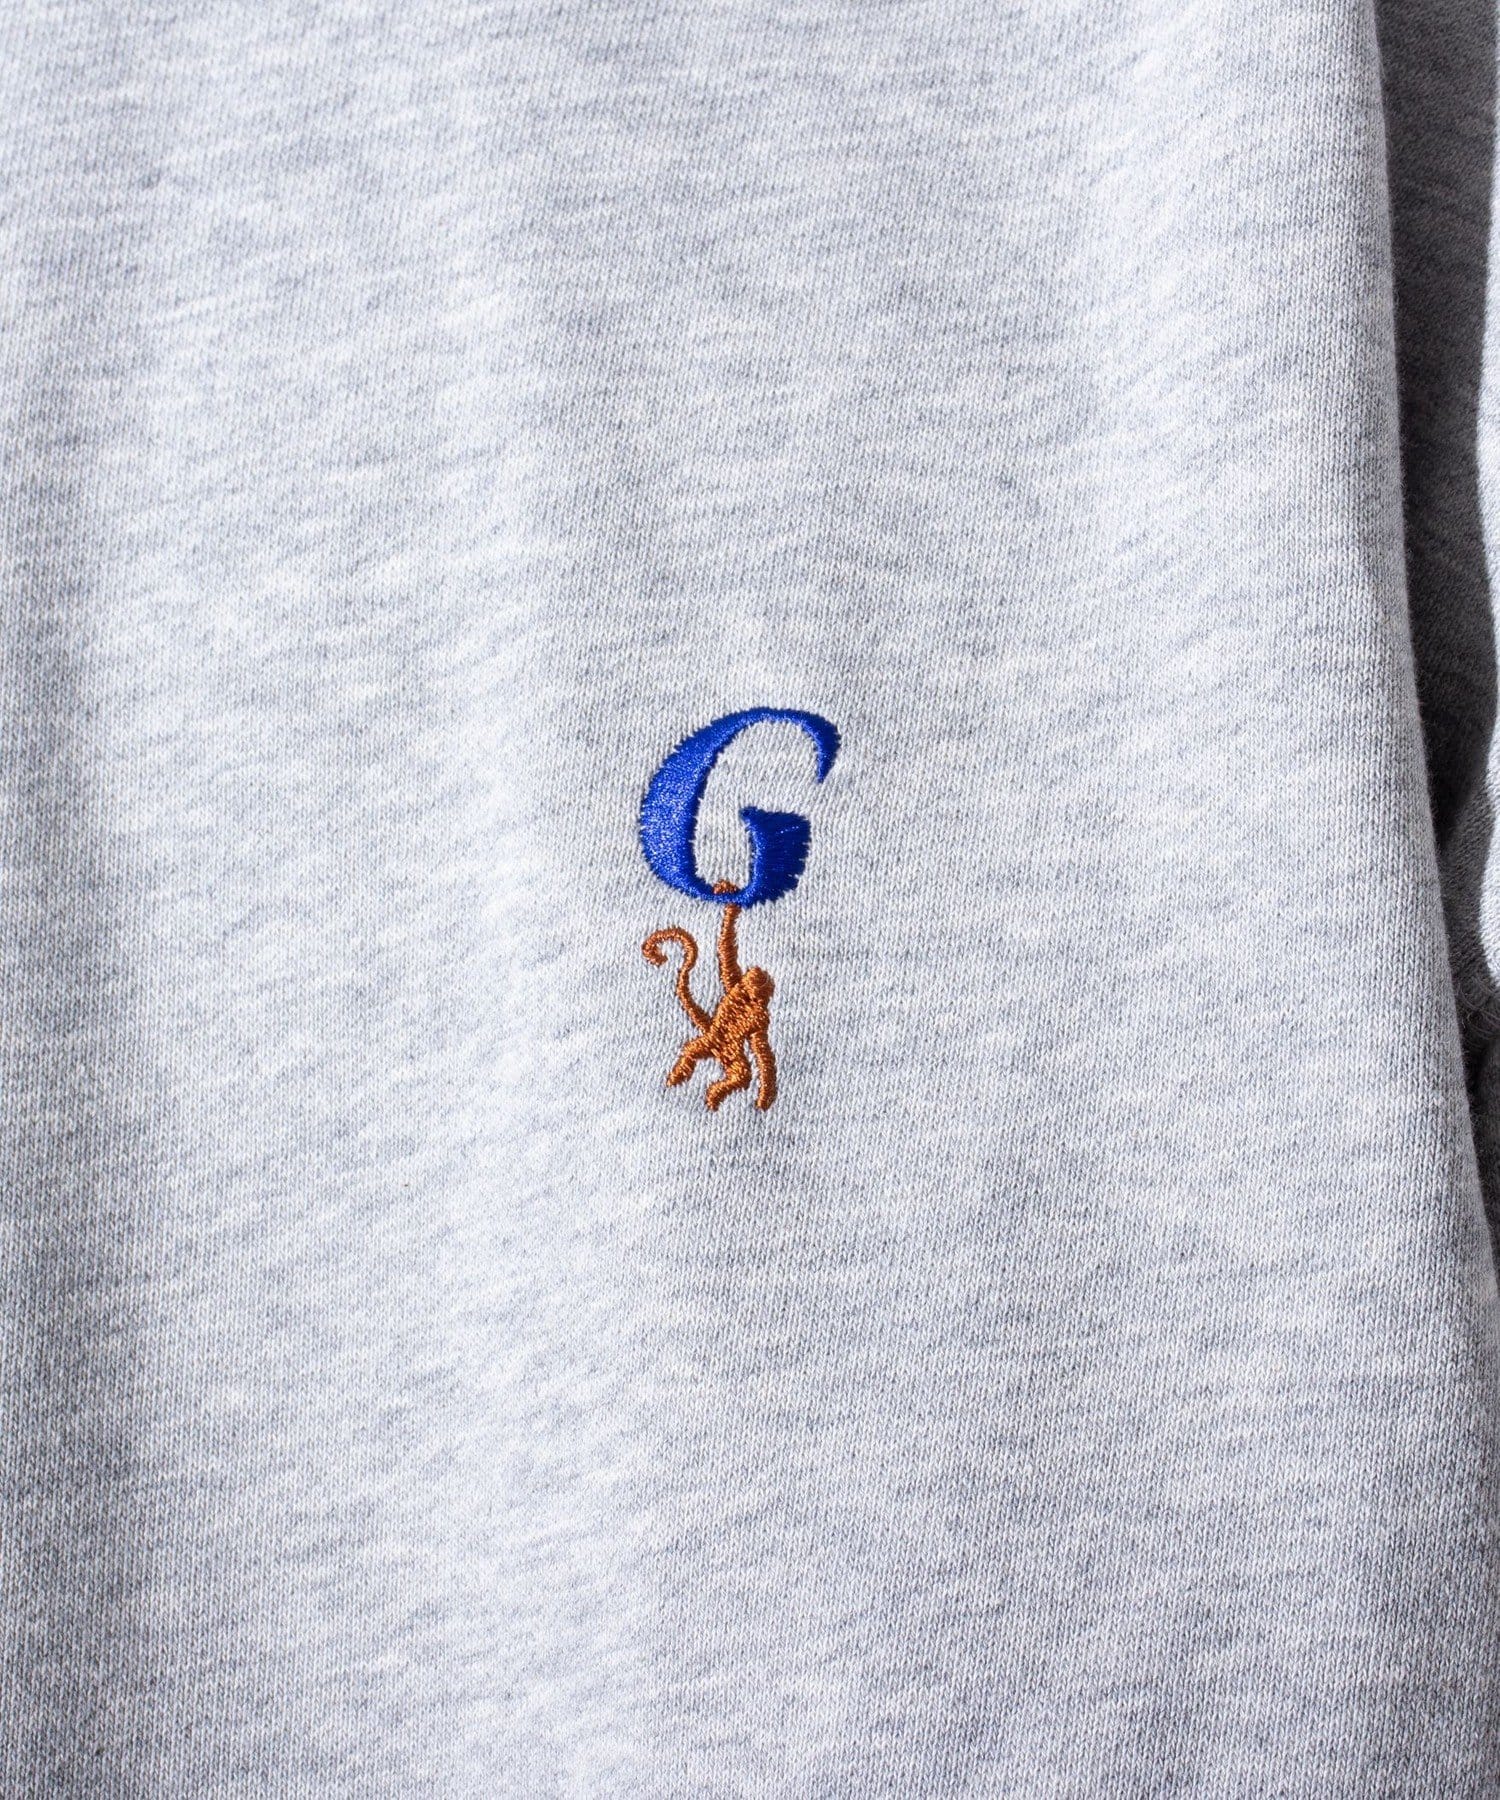 FREDY & GLOSTER(フレディ アンド グロスター) 【GLOSTER】ワンポイントロゴ G刺繍 クルーネックスウェット